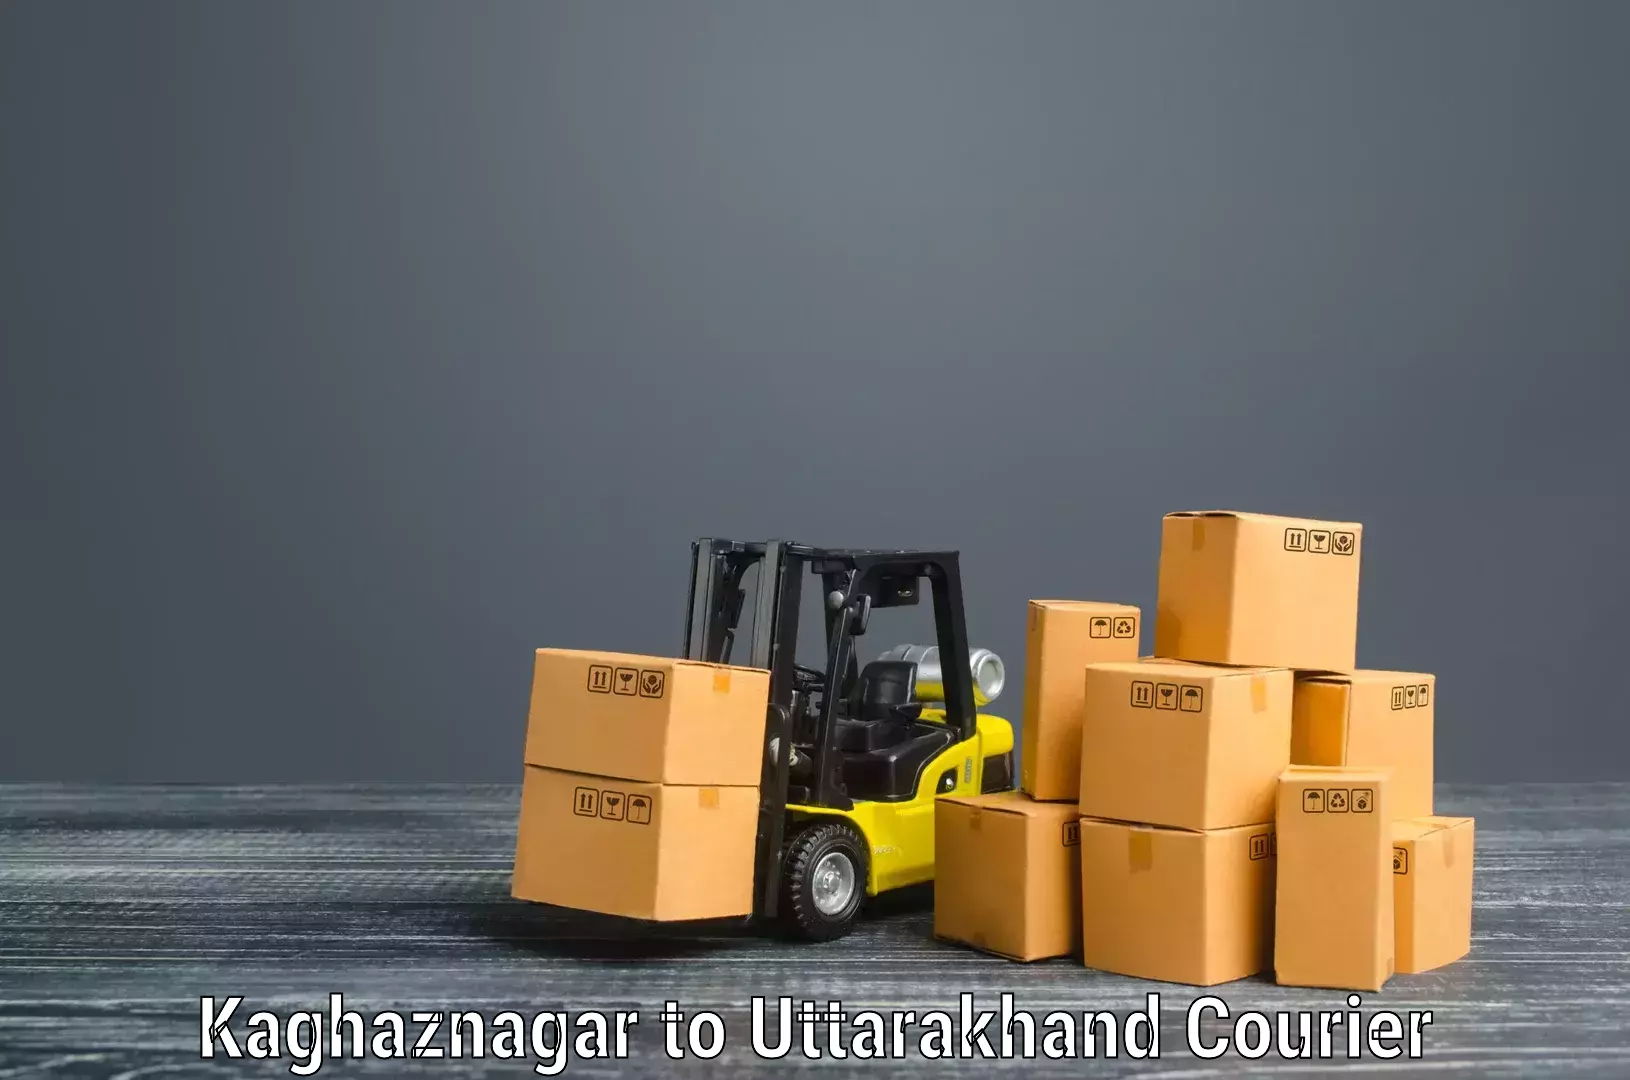 Furniture moving plans Kaghaznagar to Lansdowne